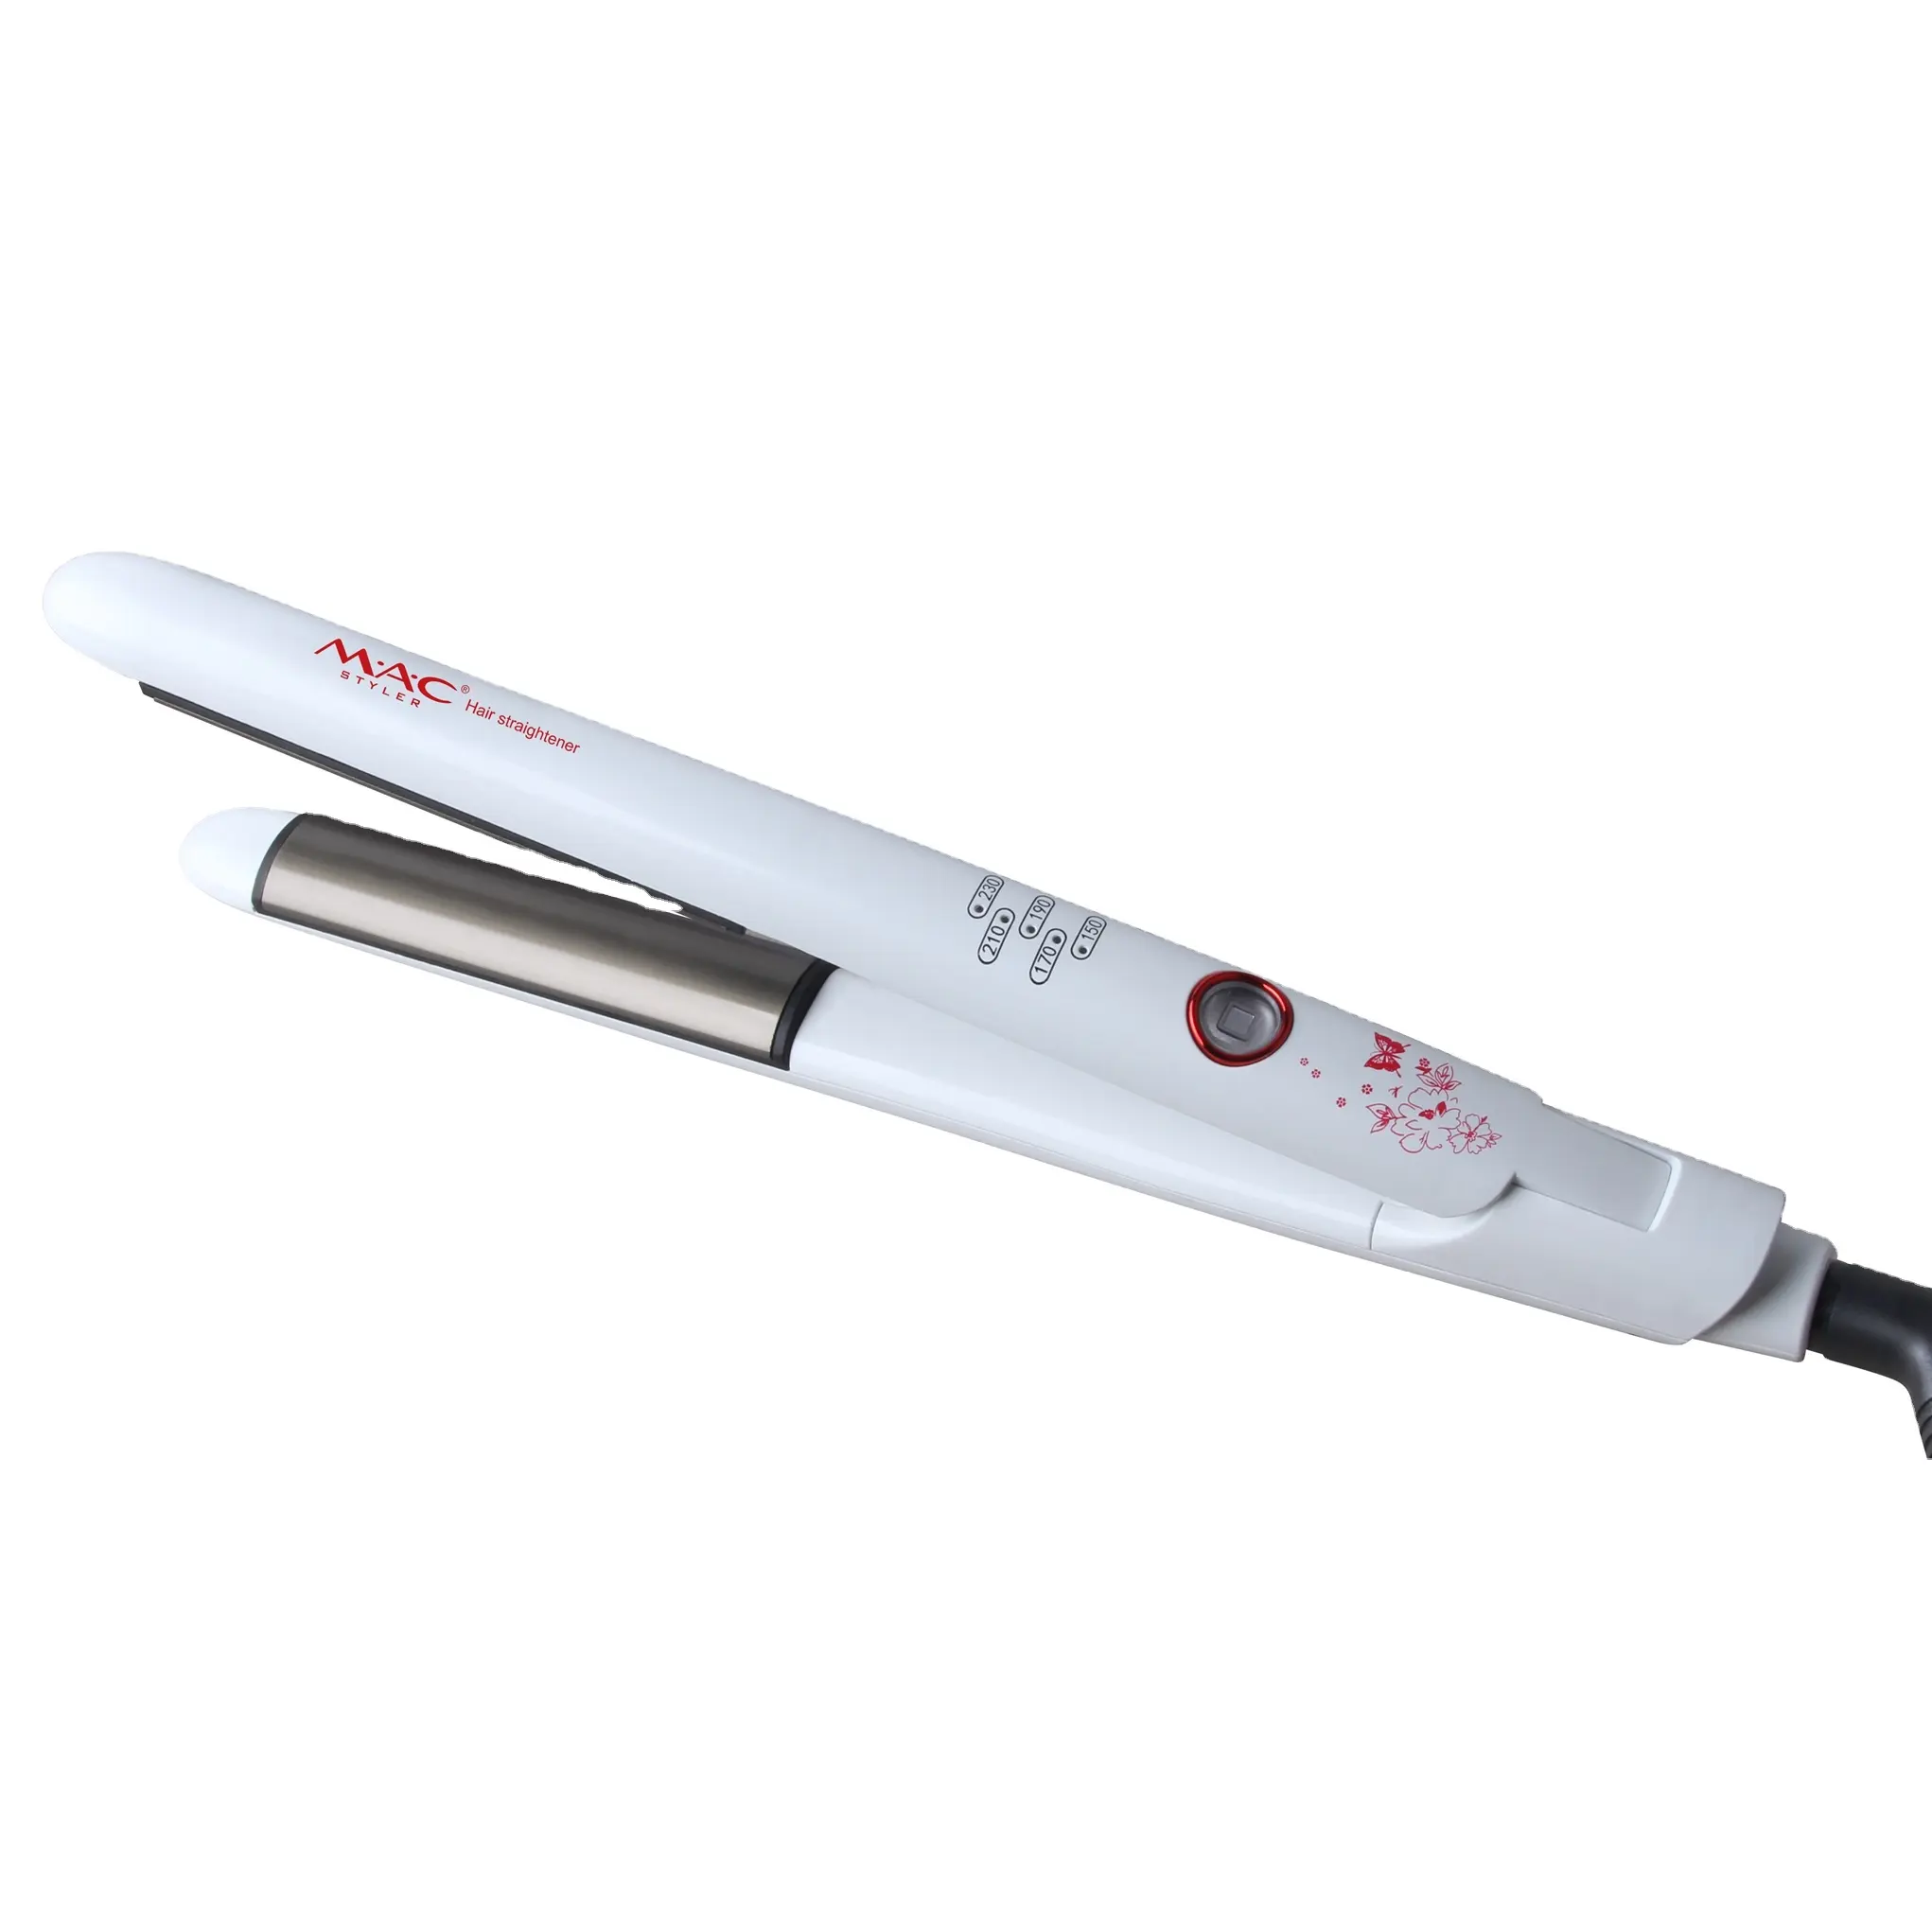 Planchas De Cabello Private Label Titanium Flat Iron Professional 2 in 1 Curling Iron Hair Curler Straightener